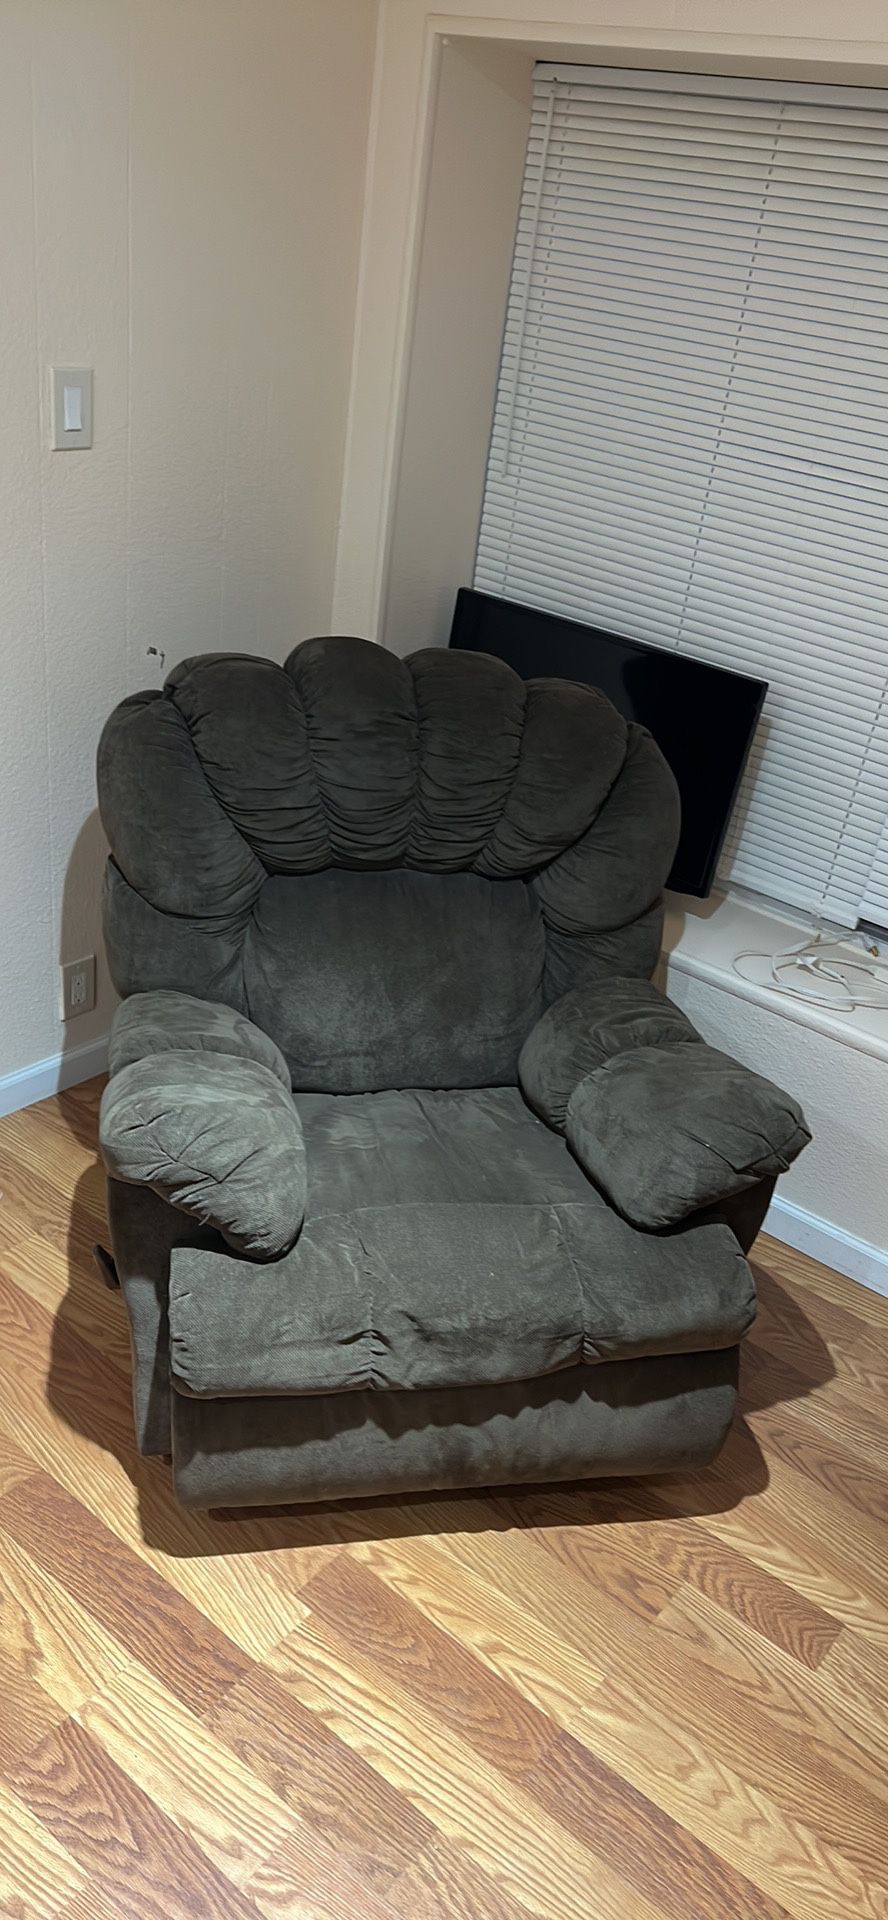 BEST OFFER Comfortable cushy recliner chair